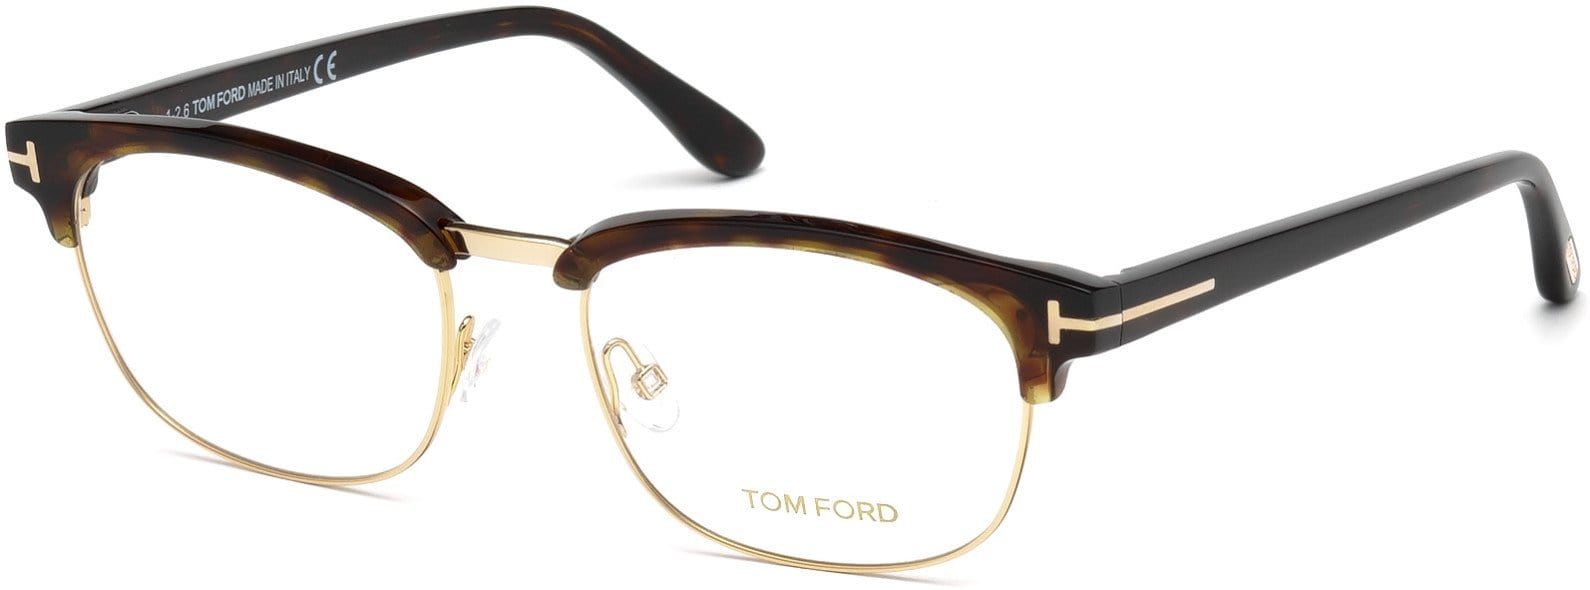 Tom Ford FT5458 Geometric Eyeglasses 052-052 - Shiny Dark Havana, Shiny Rose Gold